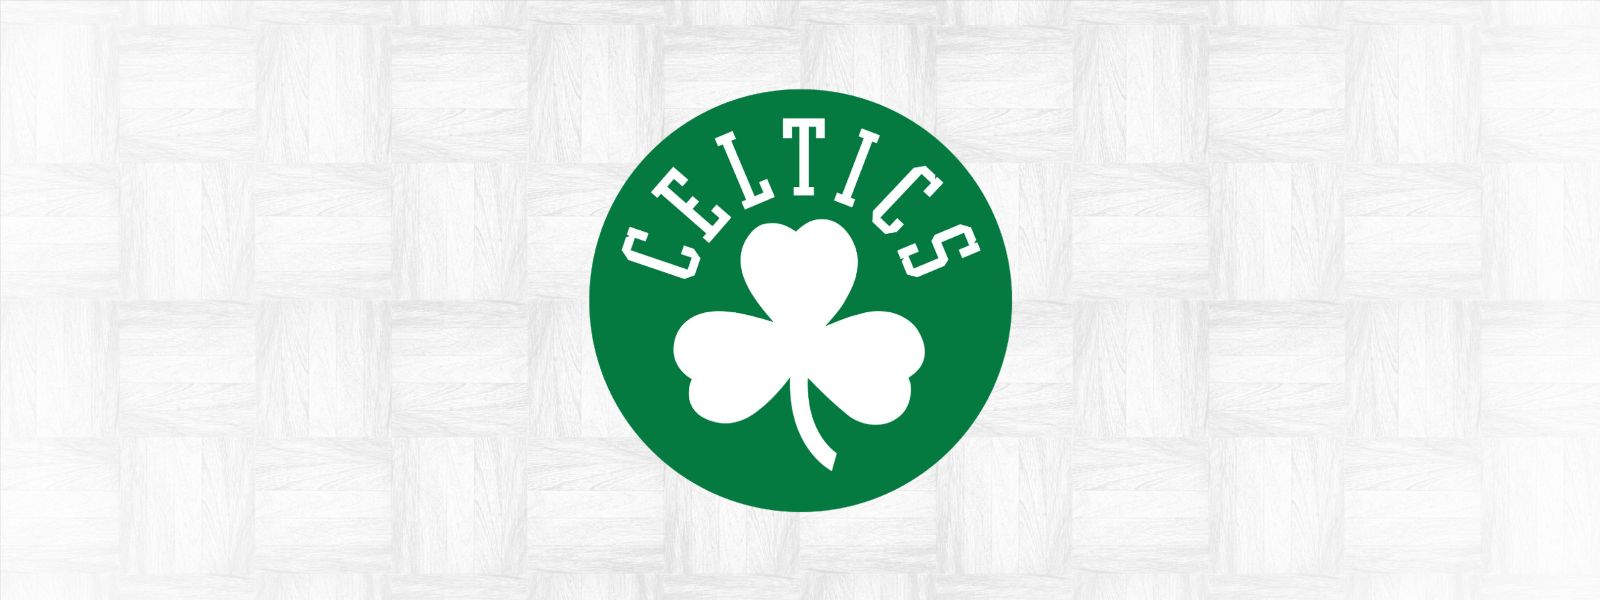 More Info for Celtics vs. Warriors